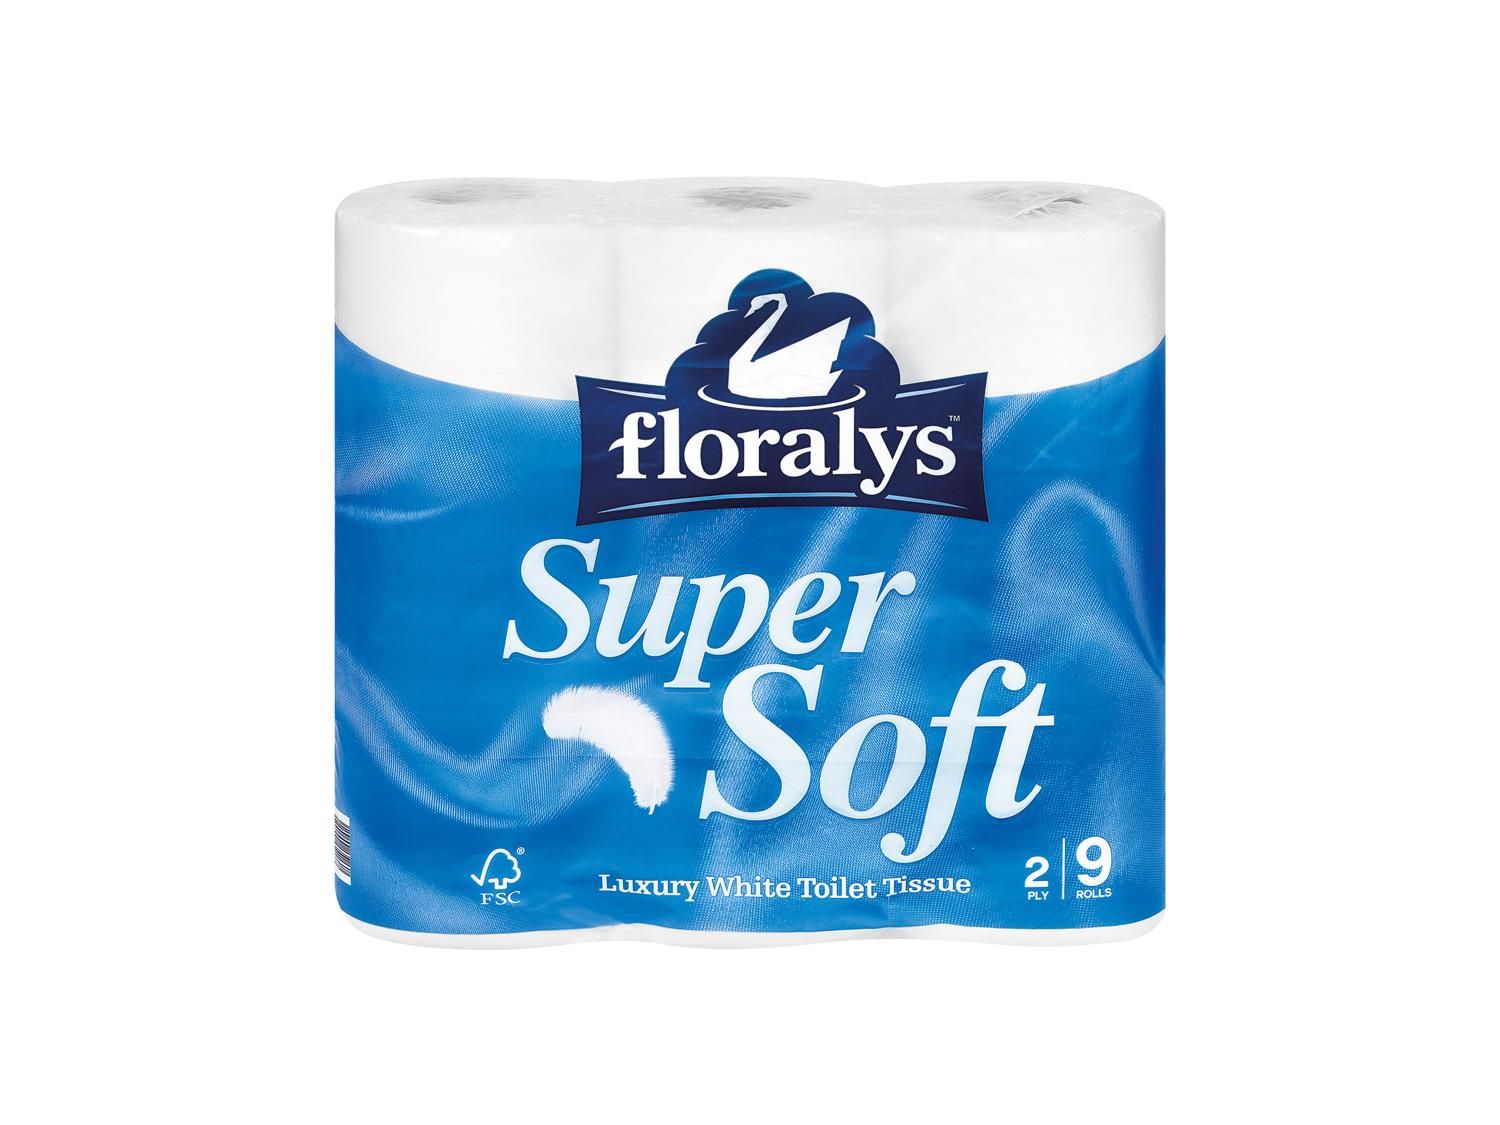 Floralys Premium White Toilet Tissue - Lidl | UK